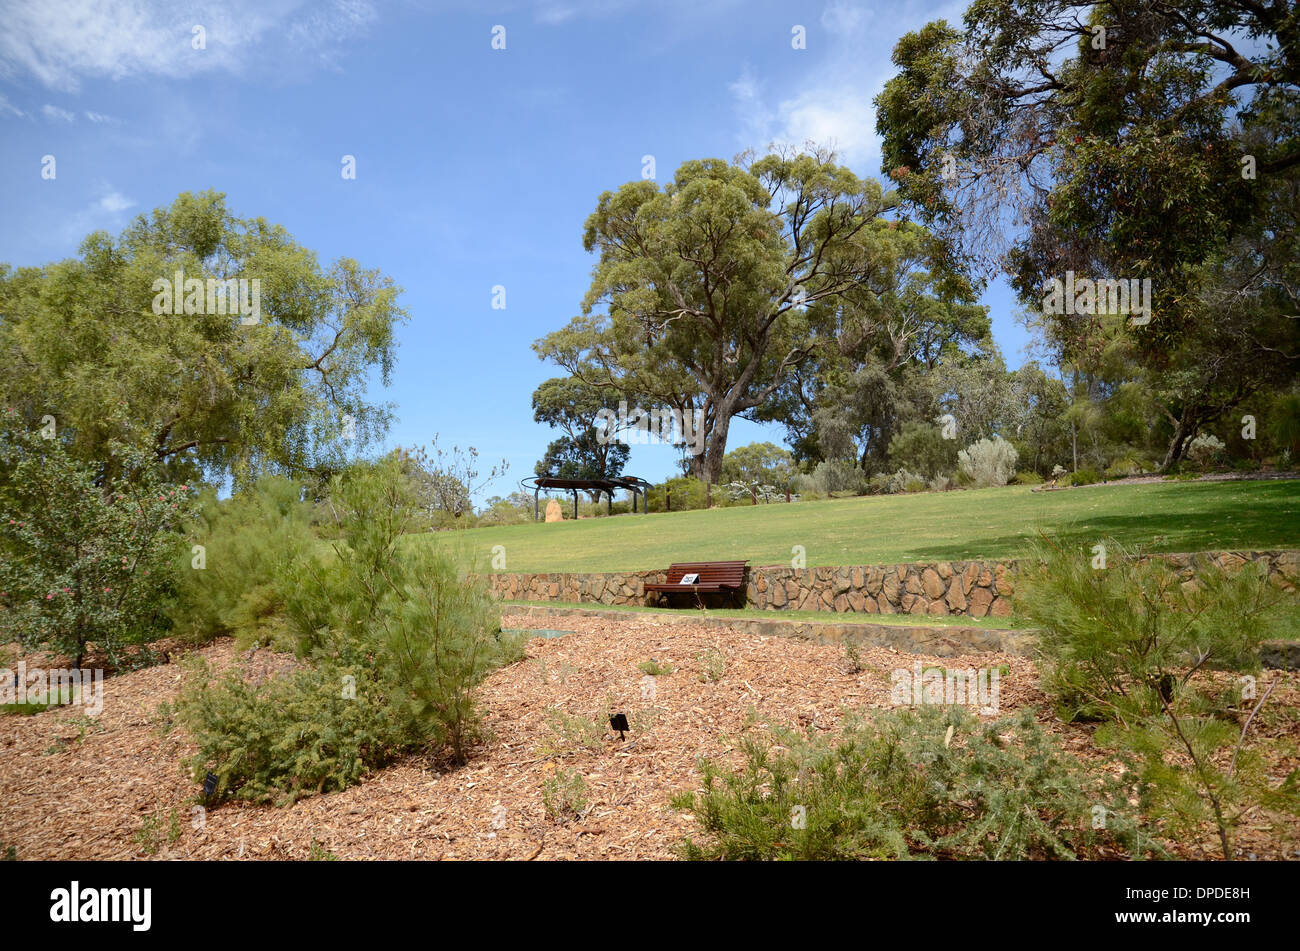 Kings Park in Perth, Western Australia, Australia Stockfoto